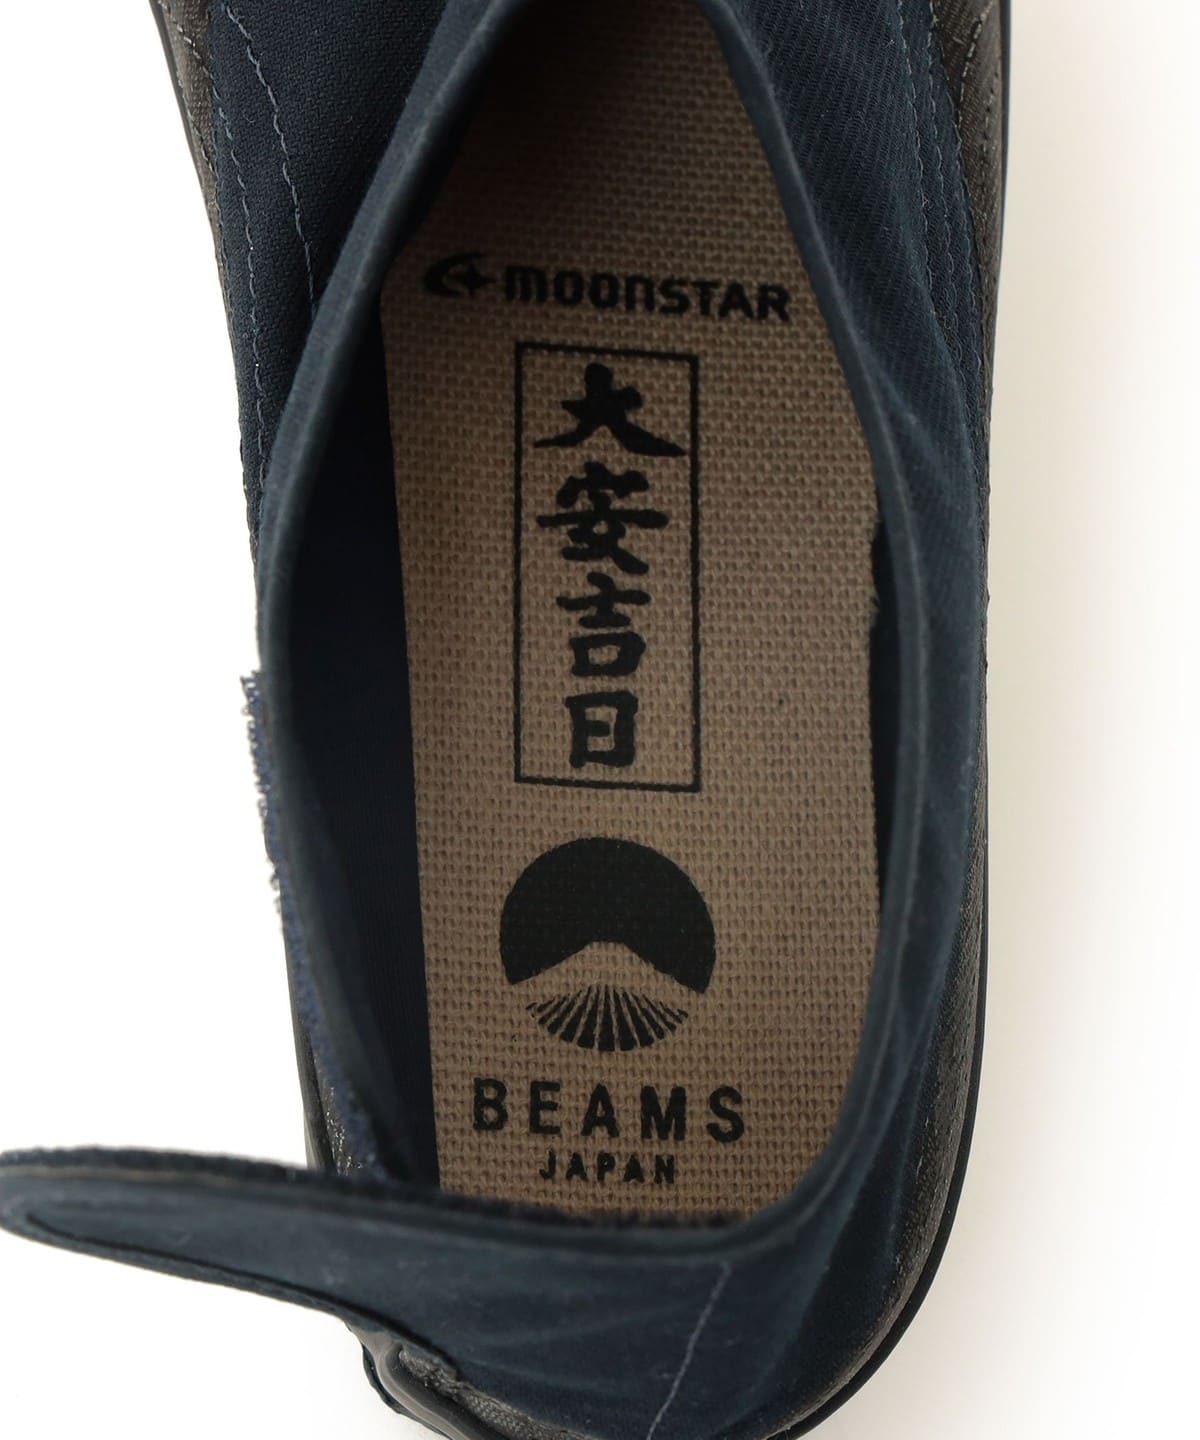 BEAMS JAPAN（ビームス ジャパン）MOONSTAR × BEAMS JAPAN / 別注 じか